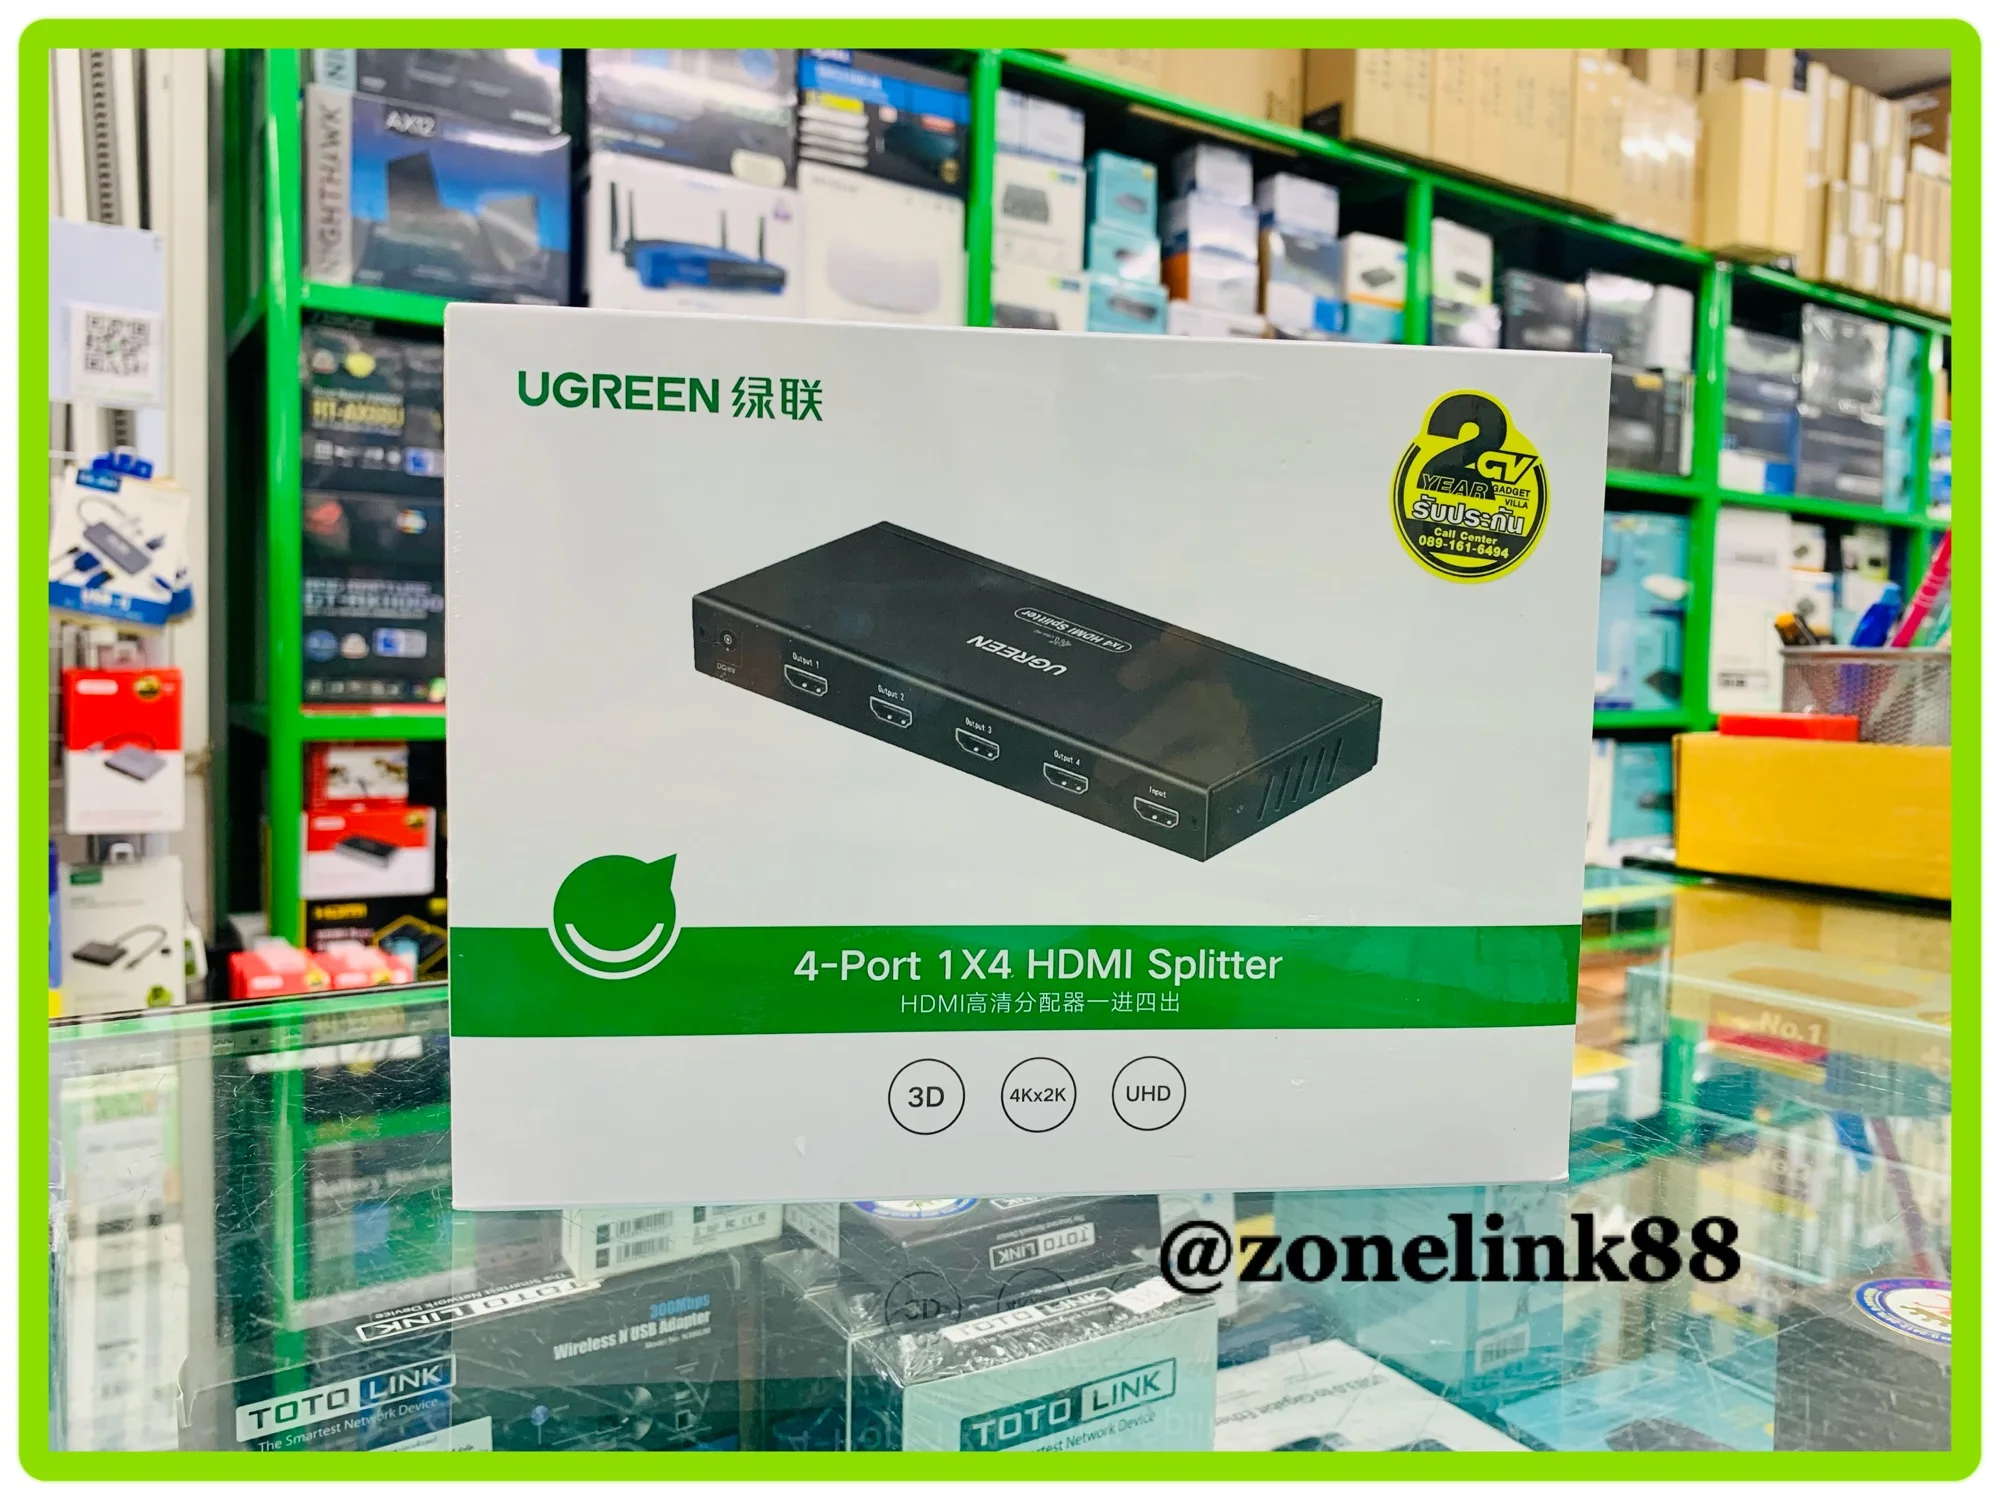 UGREEN 40202 4-Port 1*4 HDMI Splitter